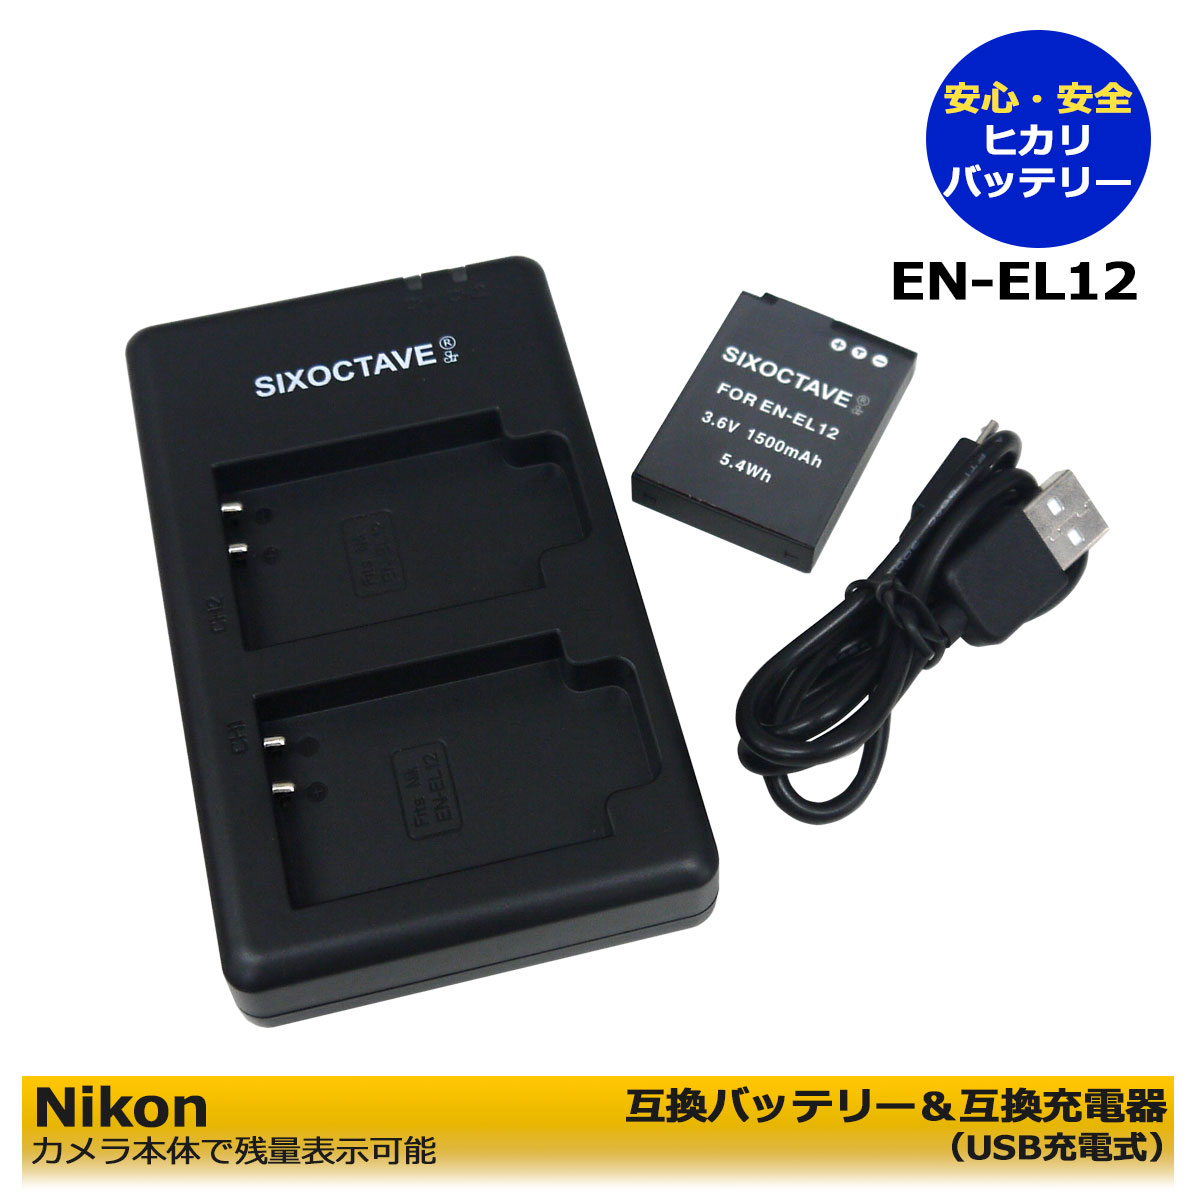 メール便不可】 EN-EL12 Nikon ニコン 互換バッテリー 1個と 互換デュアルUSBチャージャー の2点セット 2個同時充電可能  Coolpix S9300 P340 W300 クールピクス 充電器